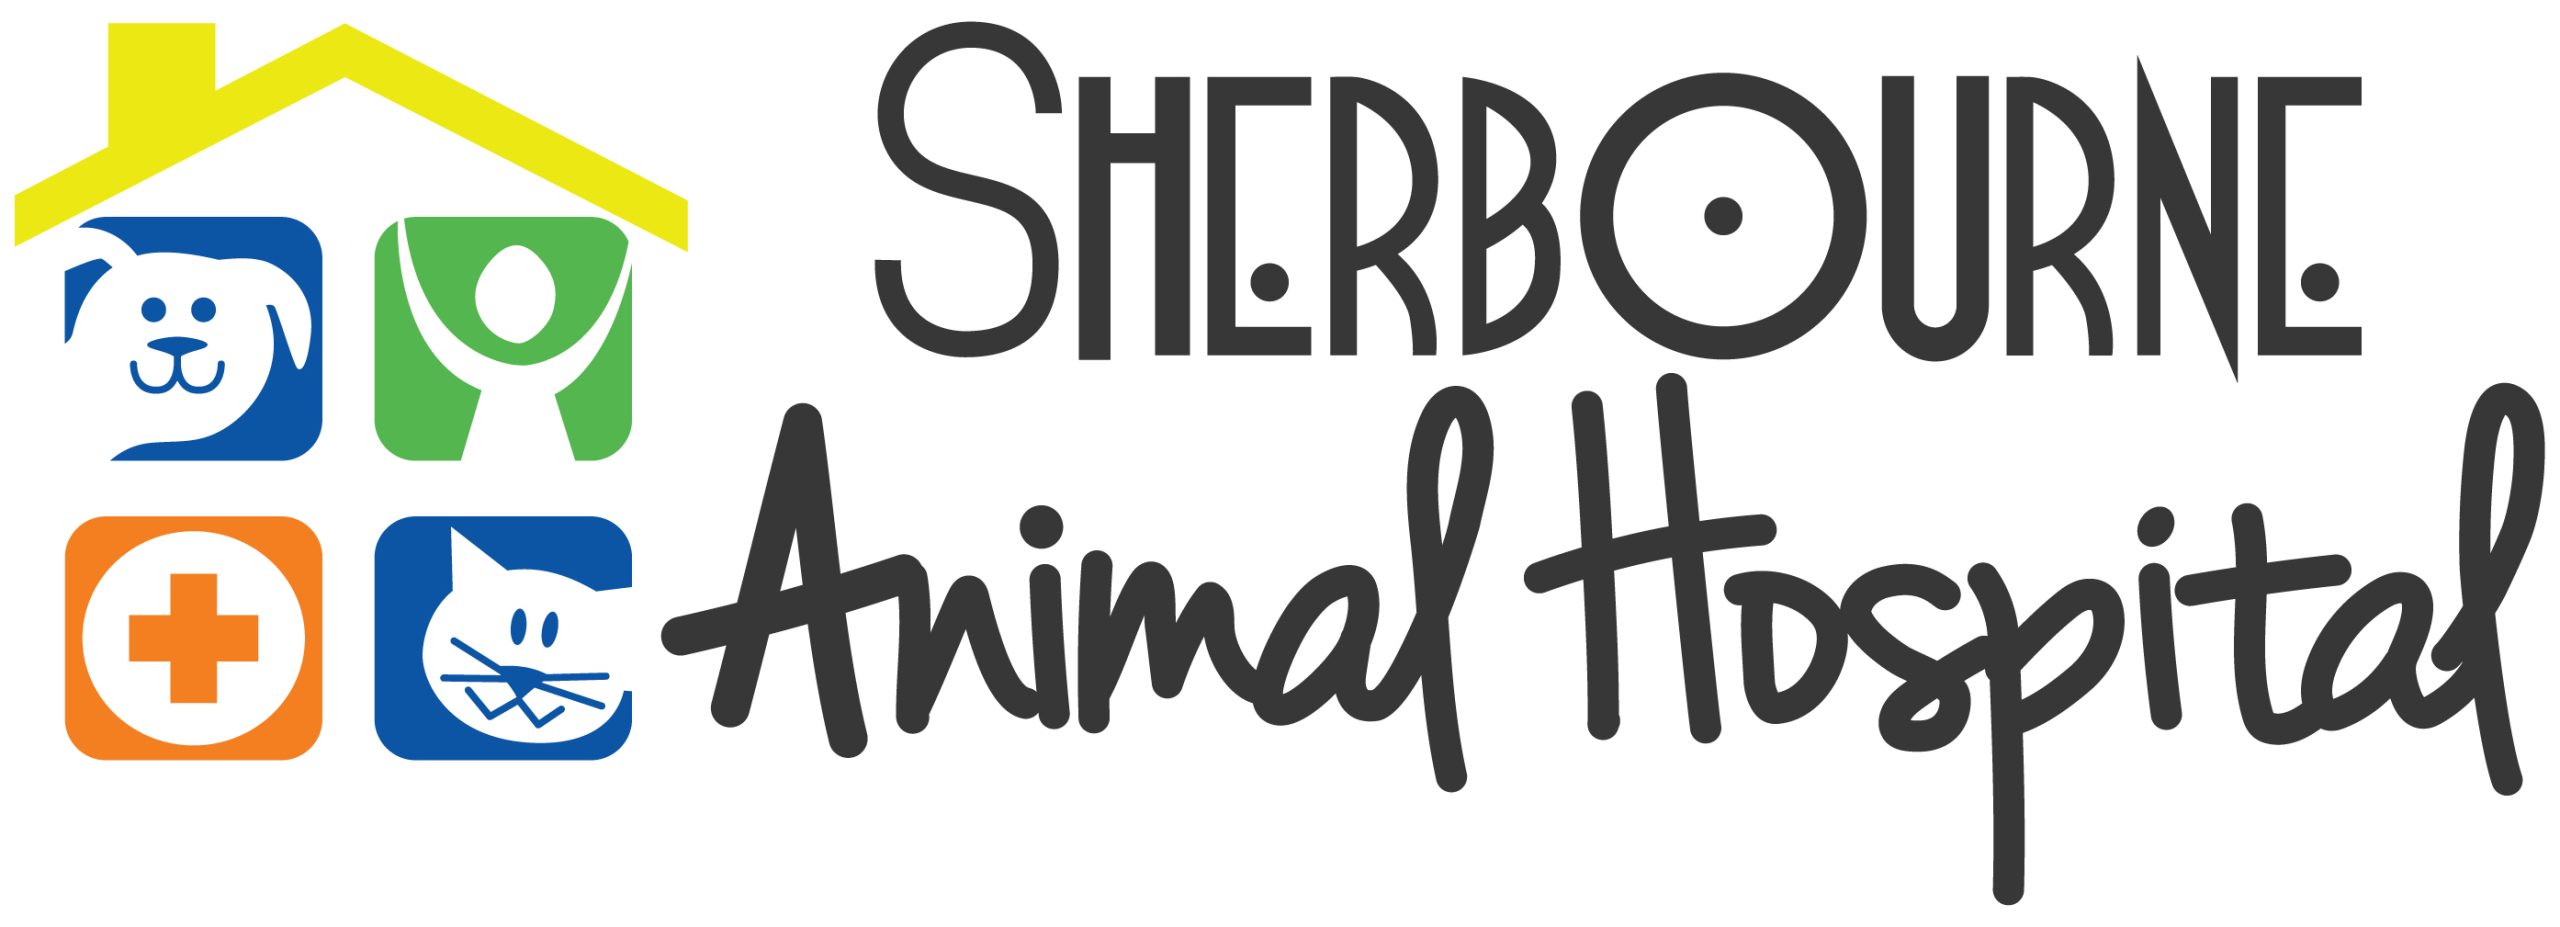 Sherbourne Animal Hospital